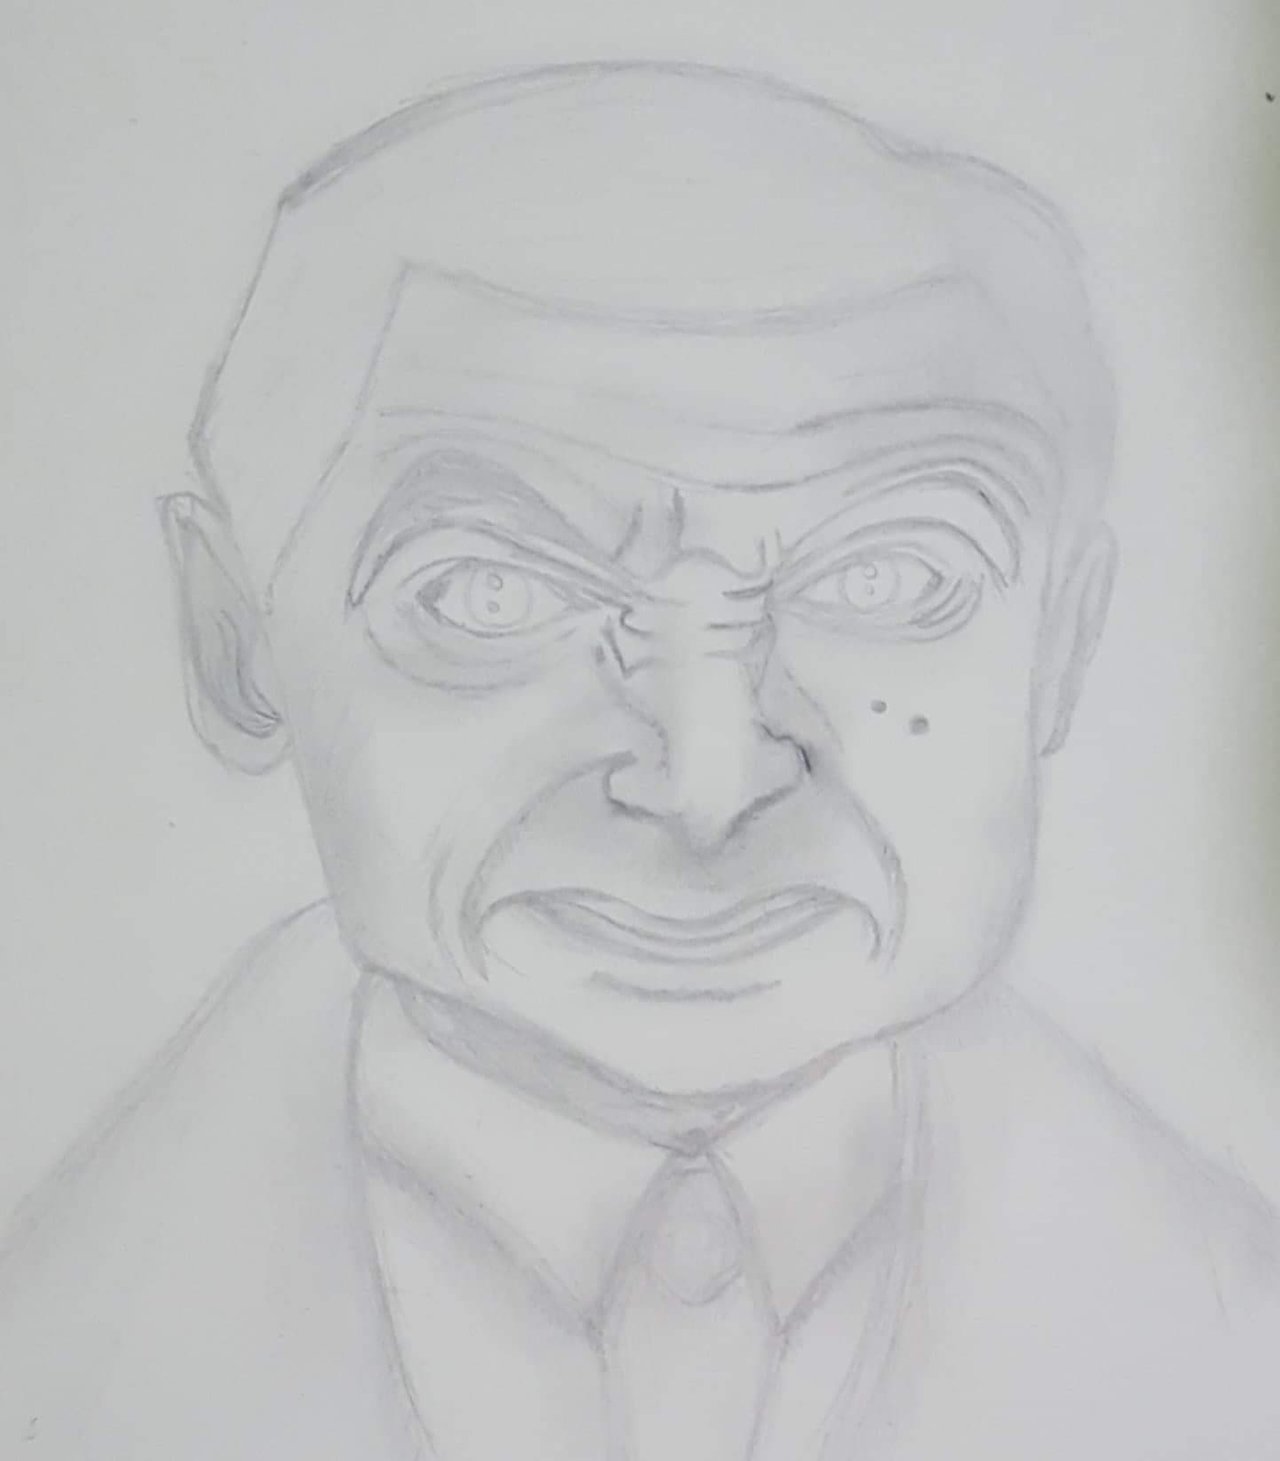 Mr. Bean drawing Part 1 #mrbean #fy | TikTok